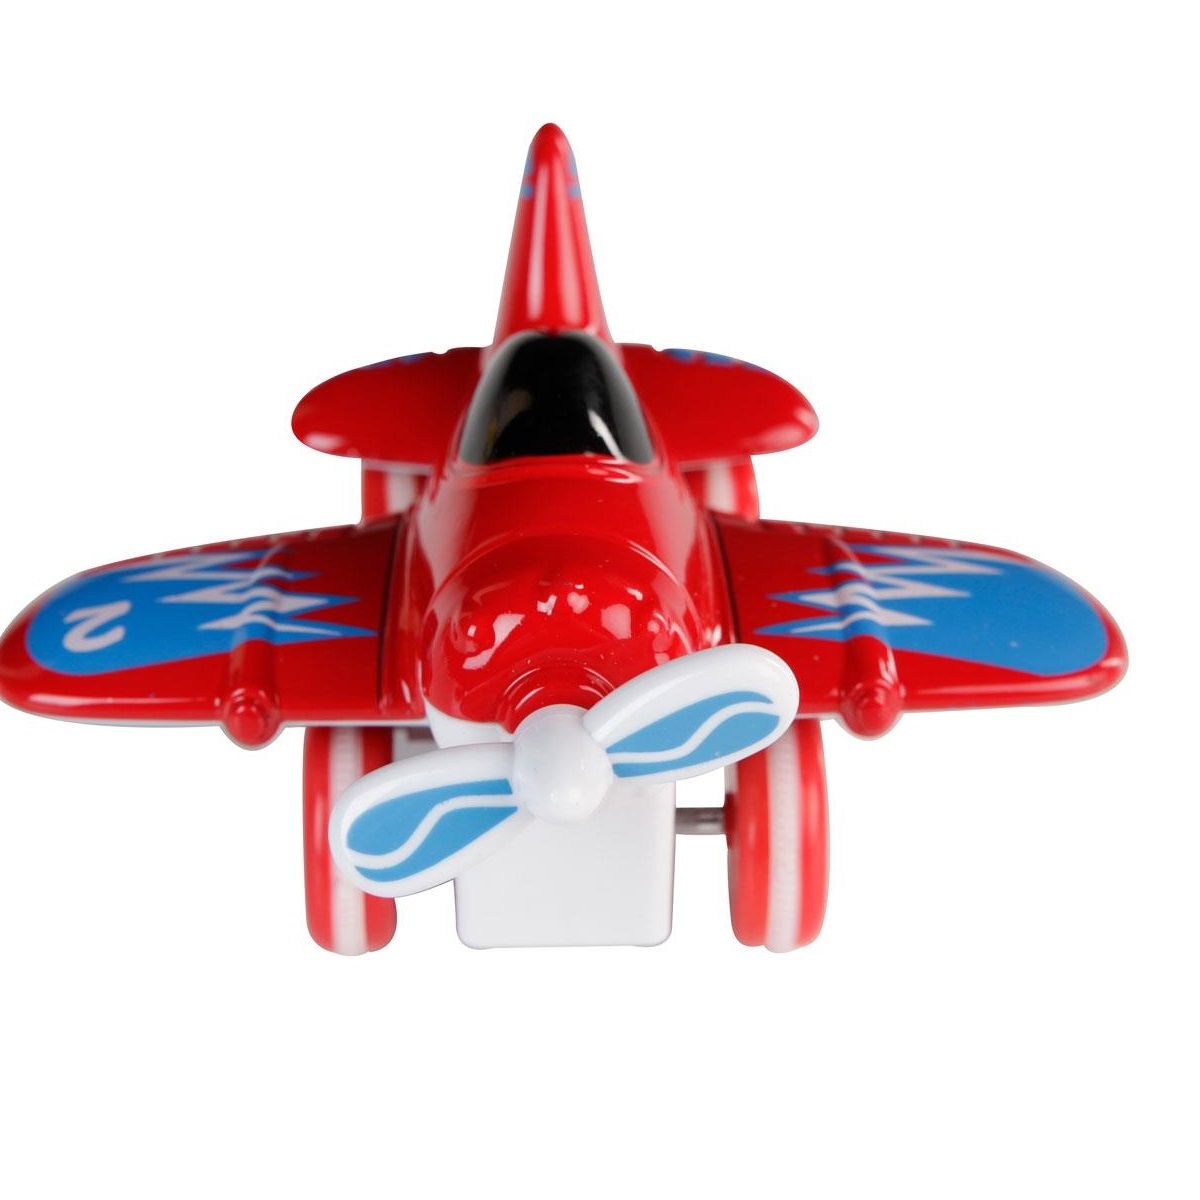 هواپیما بازی مدل air craft metal series کد 64 -  - 21